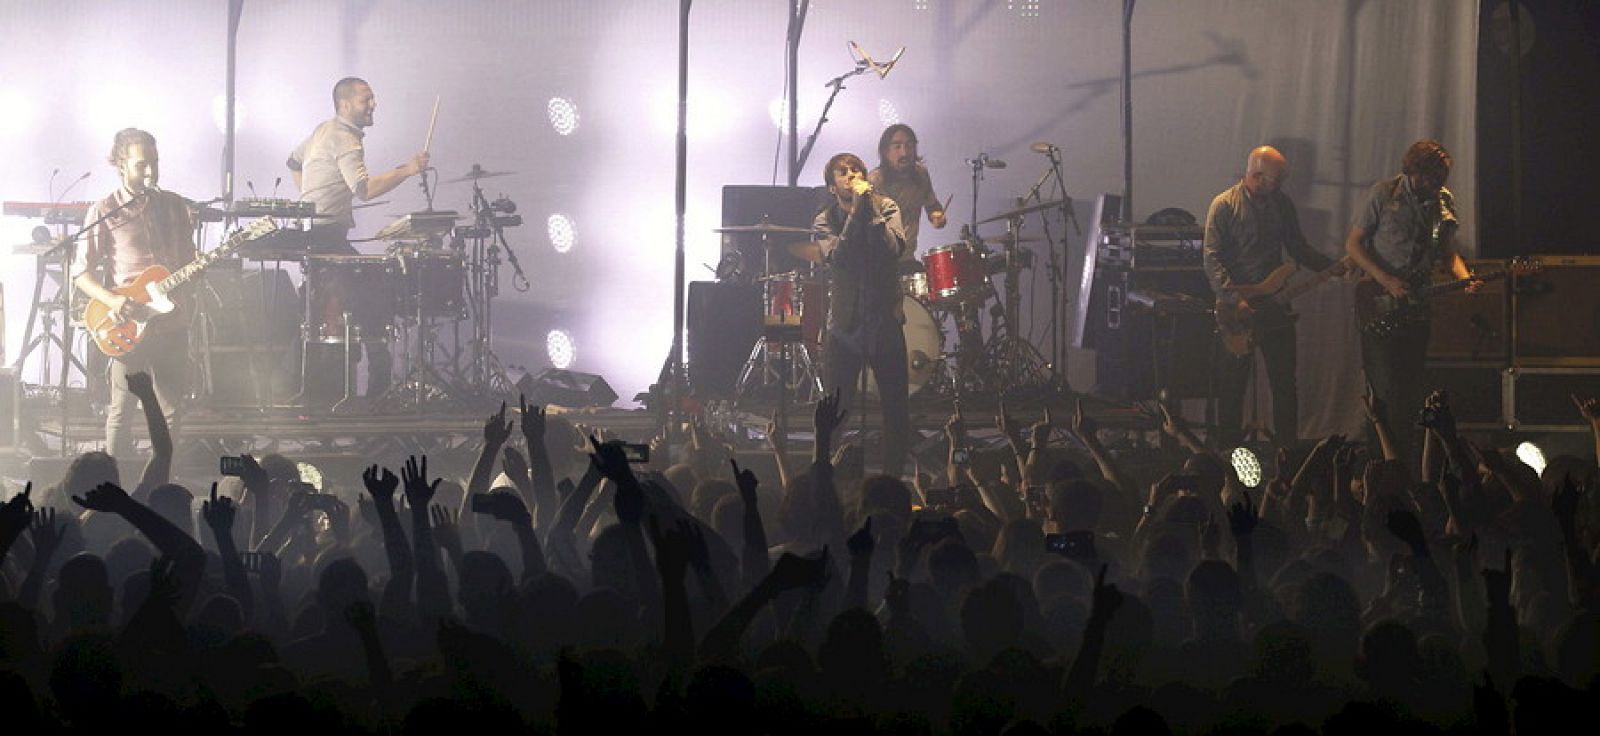 La banda madrileña Vetusta Morla, durante su concierto en la sala La RIviera, en Madrid